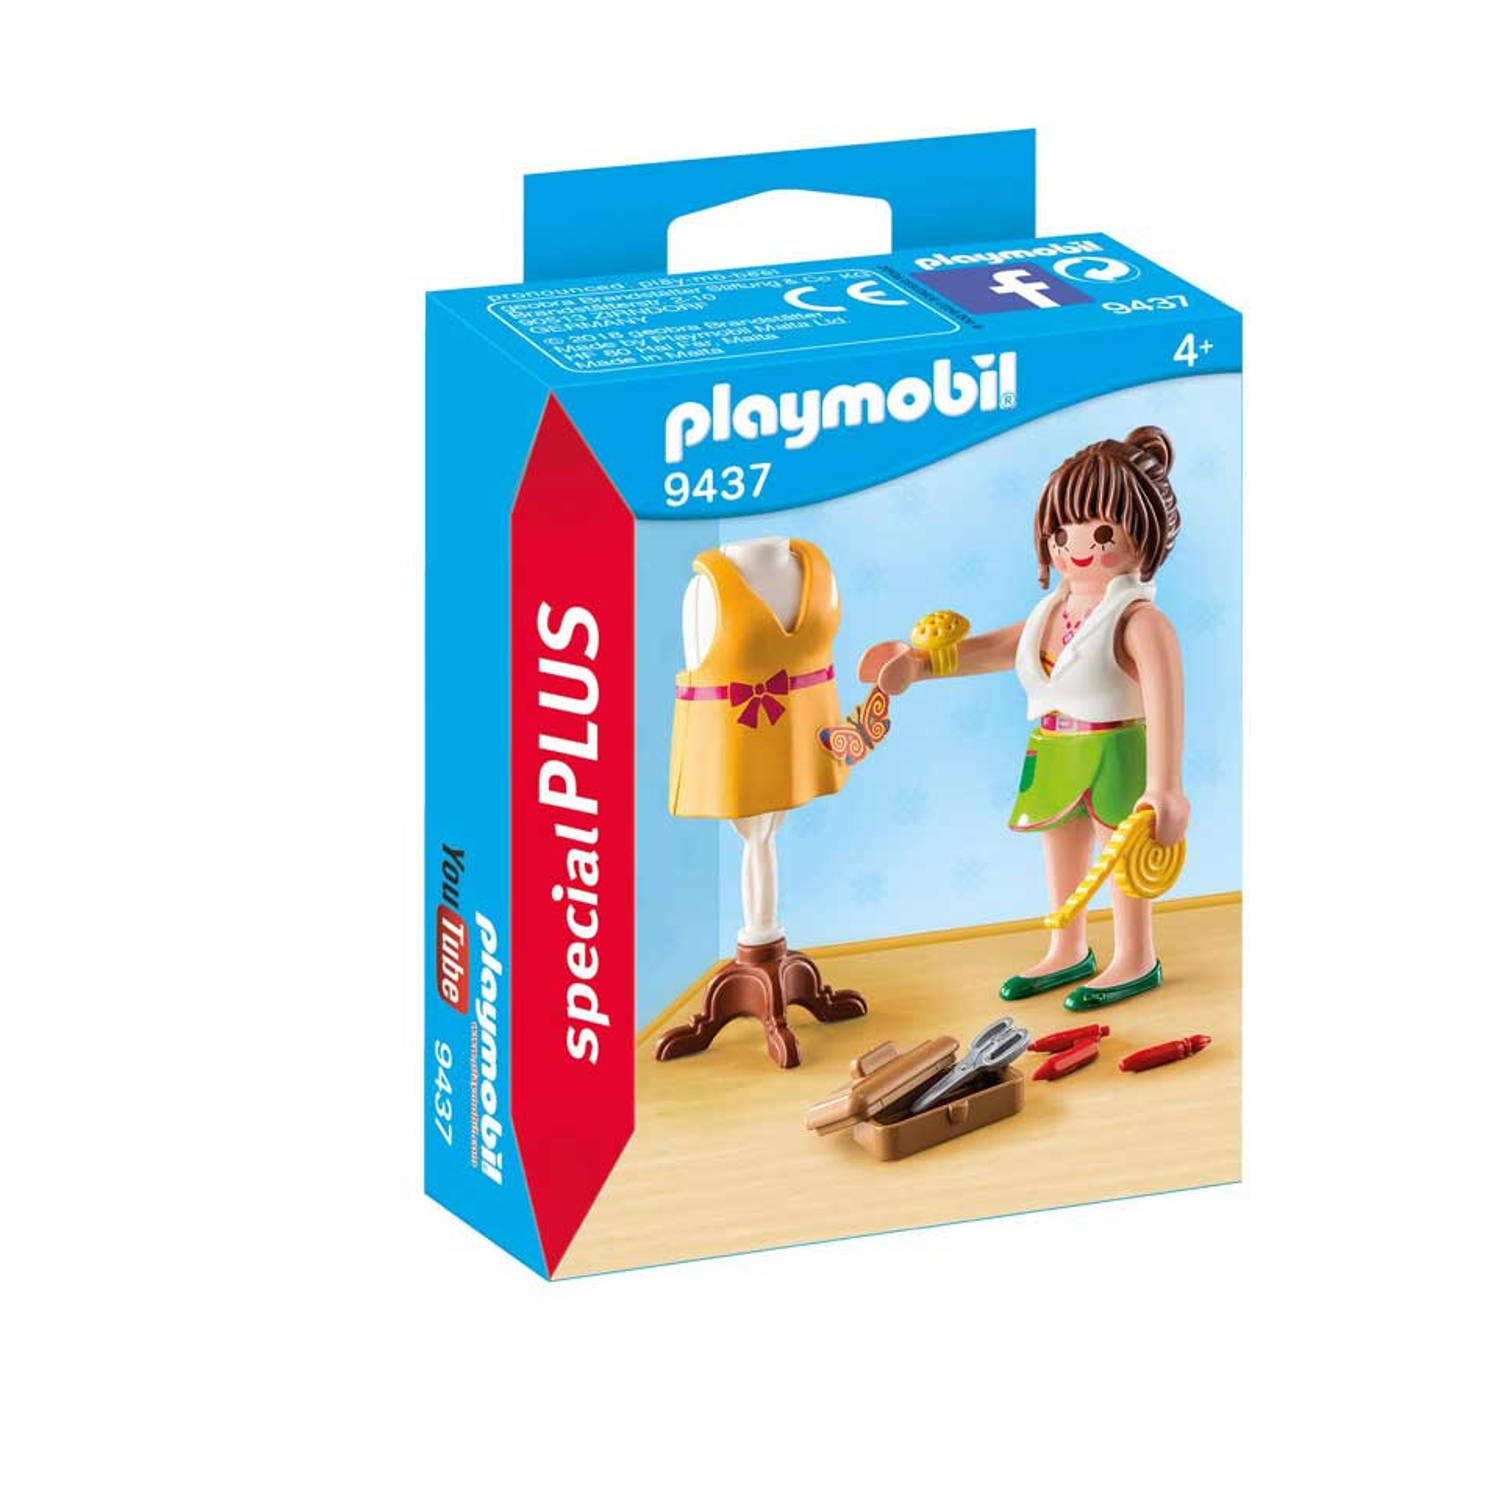 Playmobil SpecialPlus 9437 Jongen-meisje set speelgoedfiguren kinderen